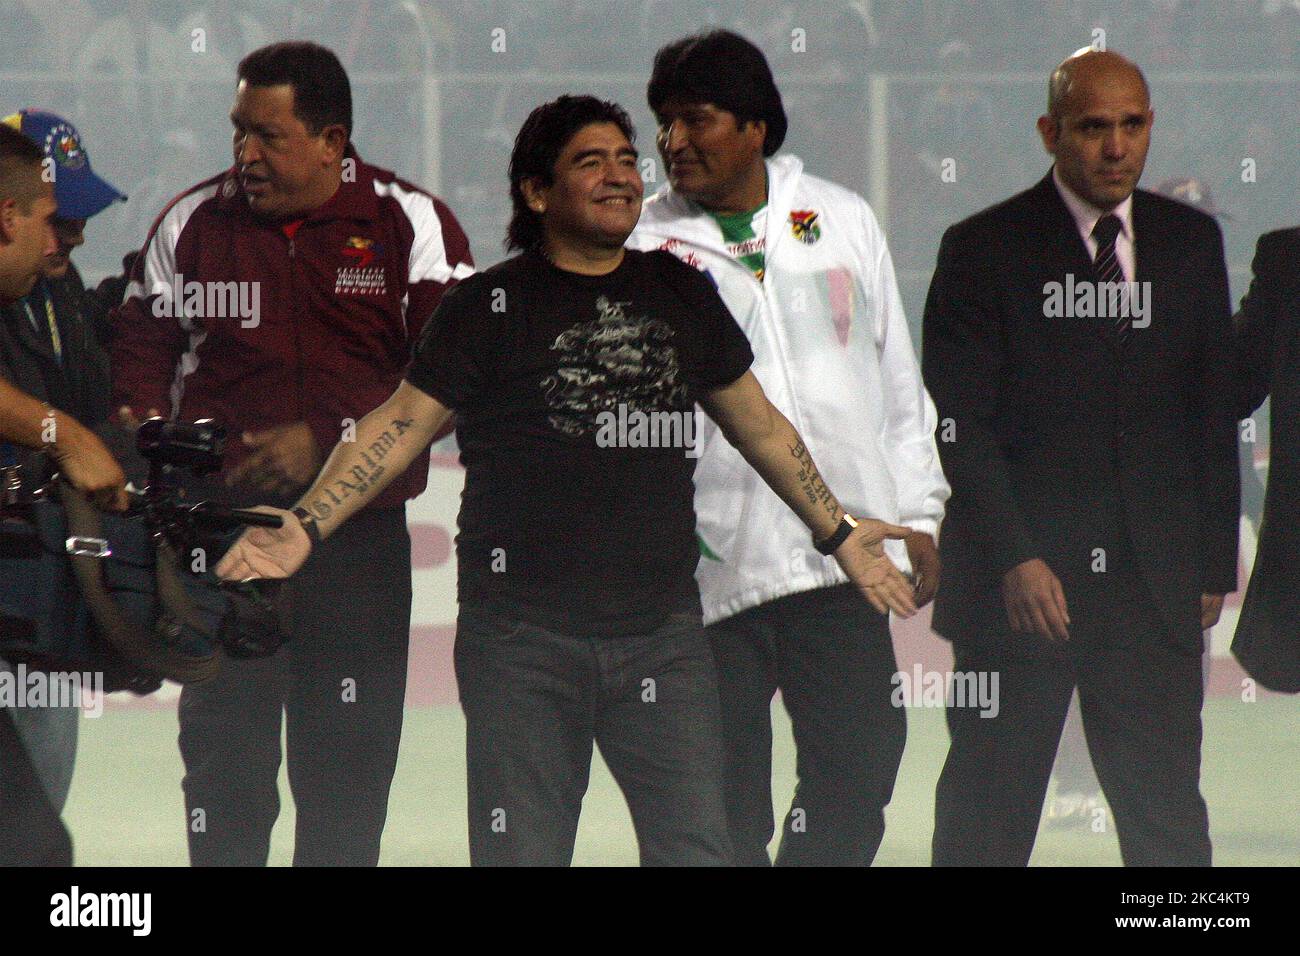 Diego Armando Maradona (C) apparaît avec le président vénézuélien Hugo Chavez (R) et son homologue bolivien Evo Morales (L) lors de l'inauguration de l'Amérique copa du football, à San Cristobal, Venezuela, 26 juin 2007. Diego Armando Maradona, considéré comme l'un des meilleurs footballeurs de l'histoire, est mort ce mercredi à son domicile en Argentine à l'âge de 60 ans, a annoncé son agent et ami Maria Morla. (Photo par Jorge Mantilla/NurPhoto) Banque D'Images